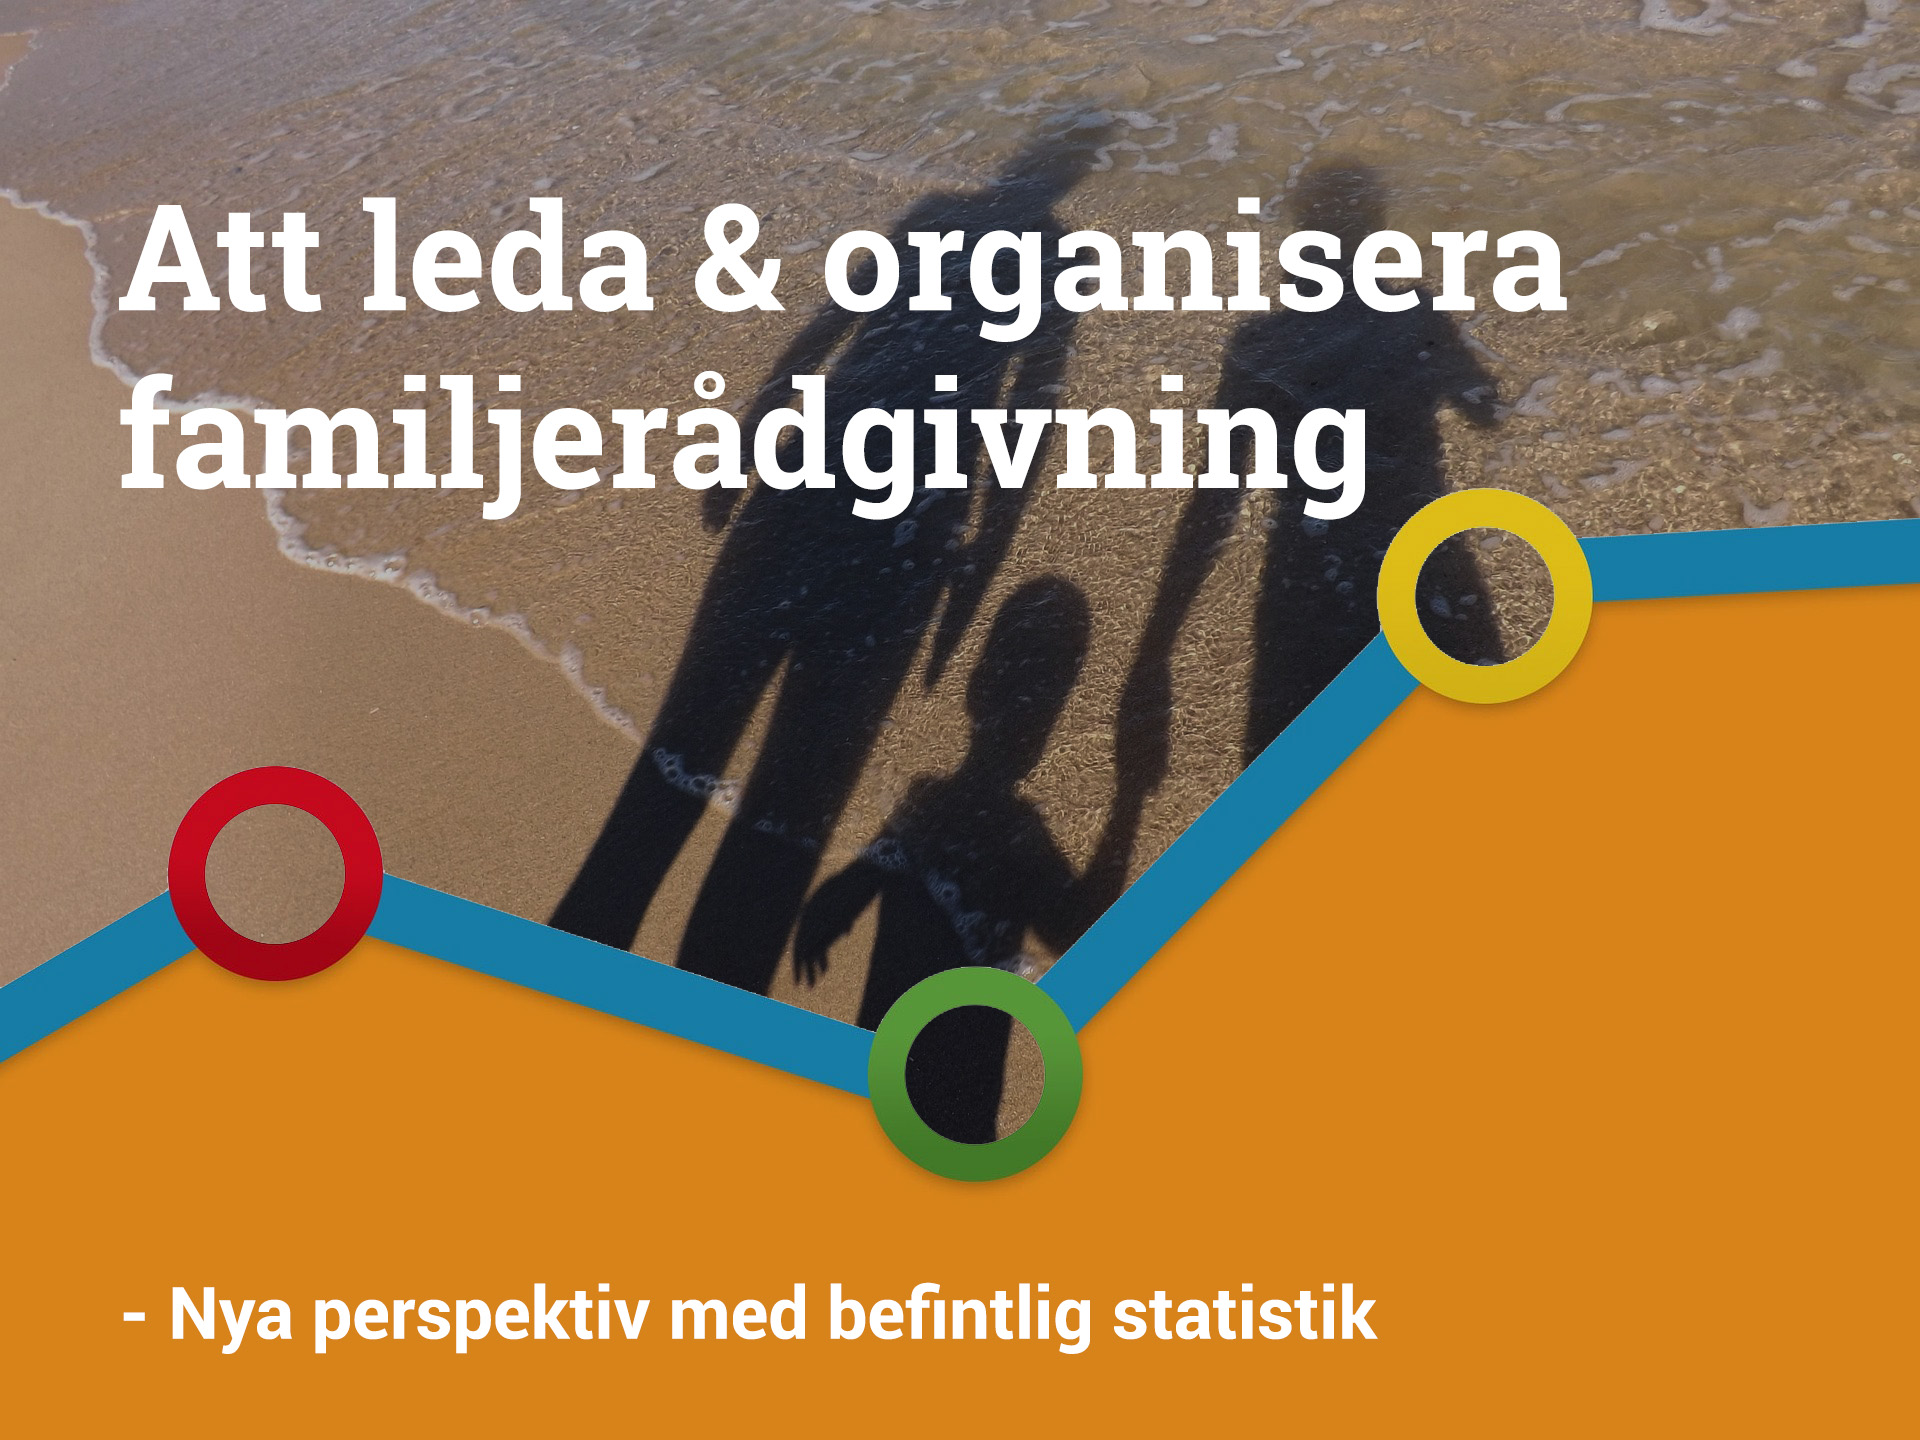 Bild med statistikkurva och rubriken "Att leda och organisera familjeråpdgivning"